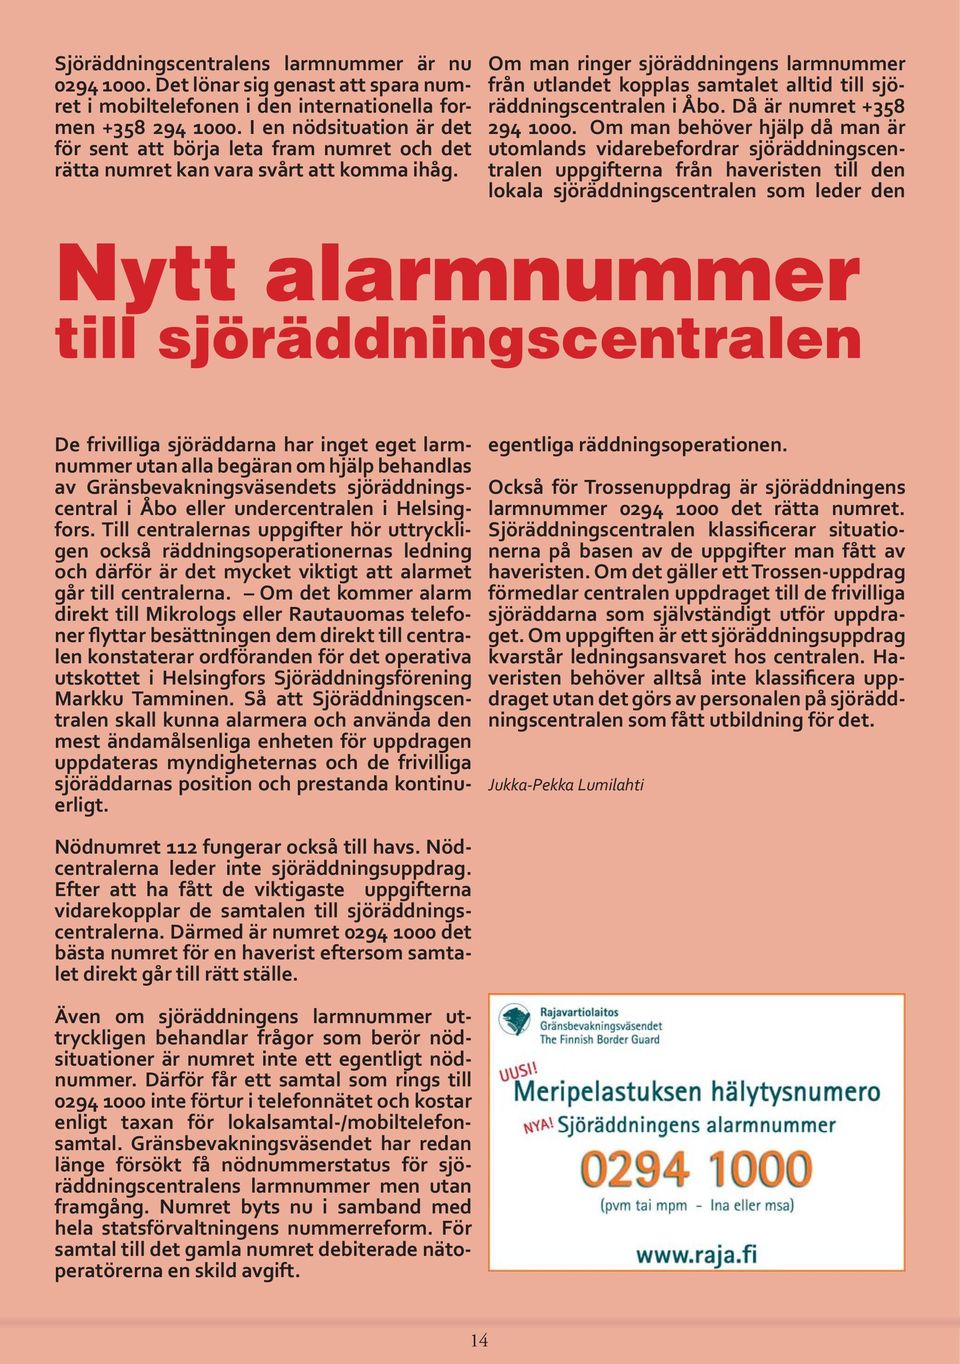 Om man ringer sjöräddningens larmnummer från utlandet kopplas samtalet alltid till sjöräddningscentralen i Åbo. Då är numret +358 294 1000.